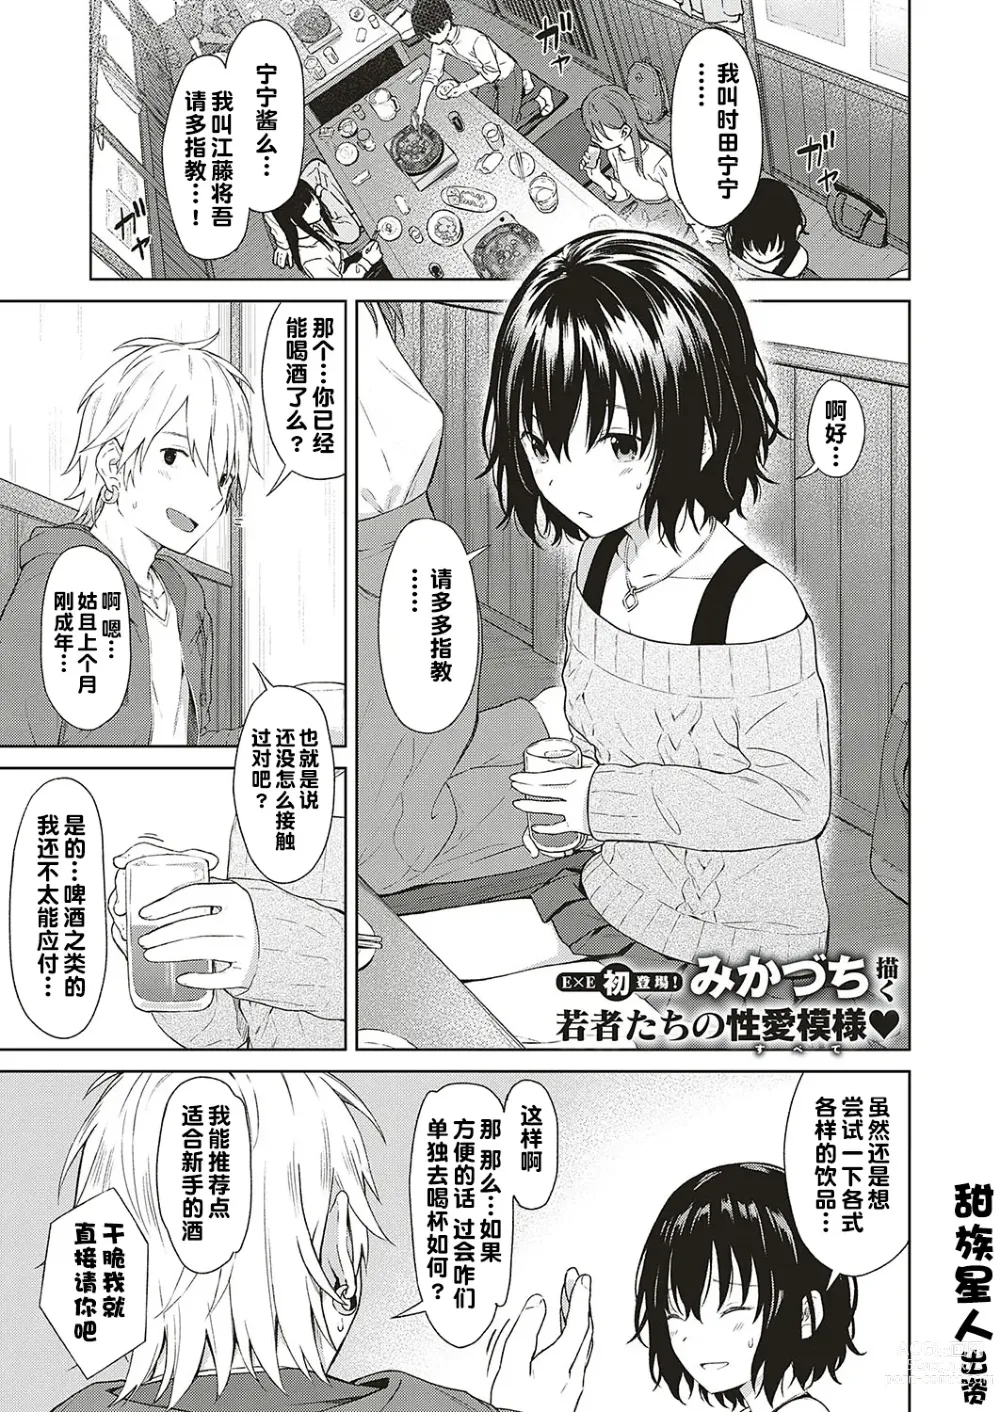 Page 1 of manga Analogy